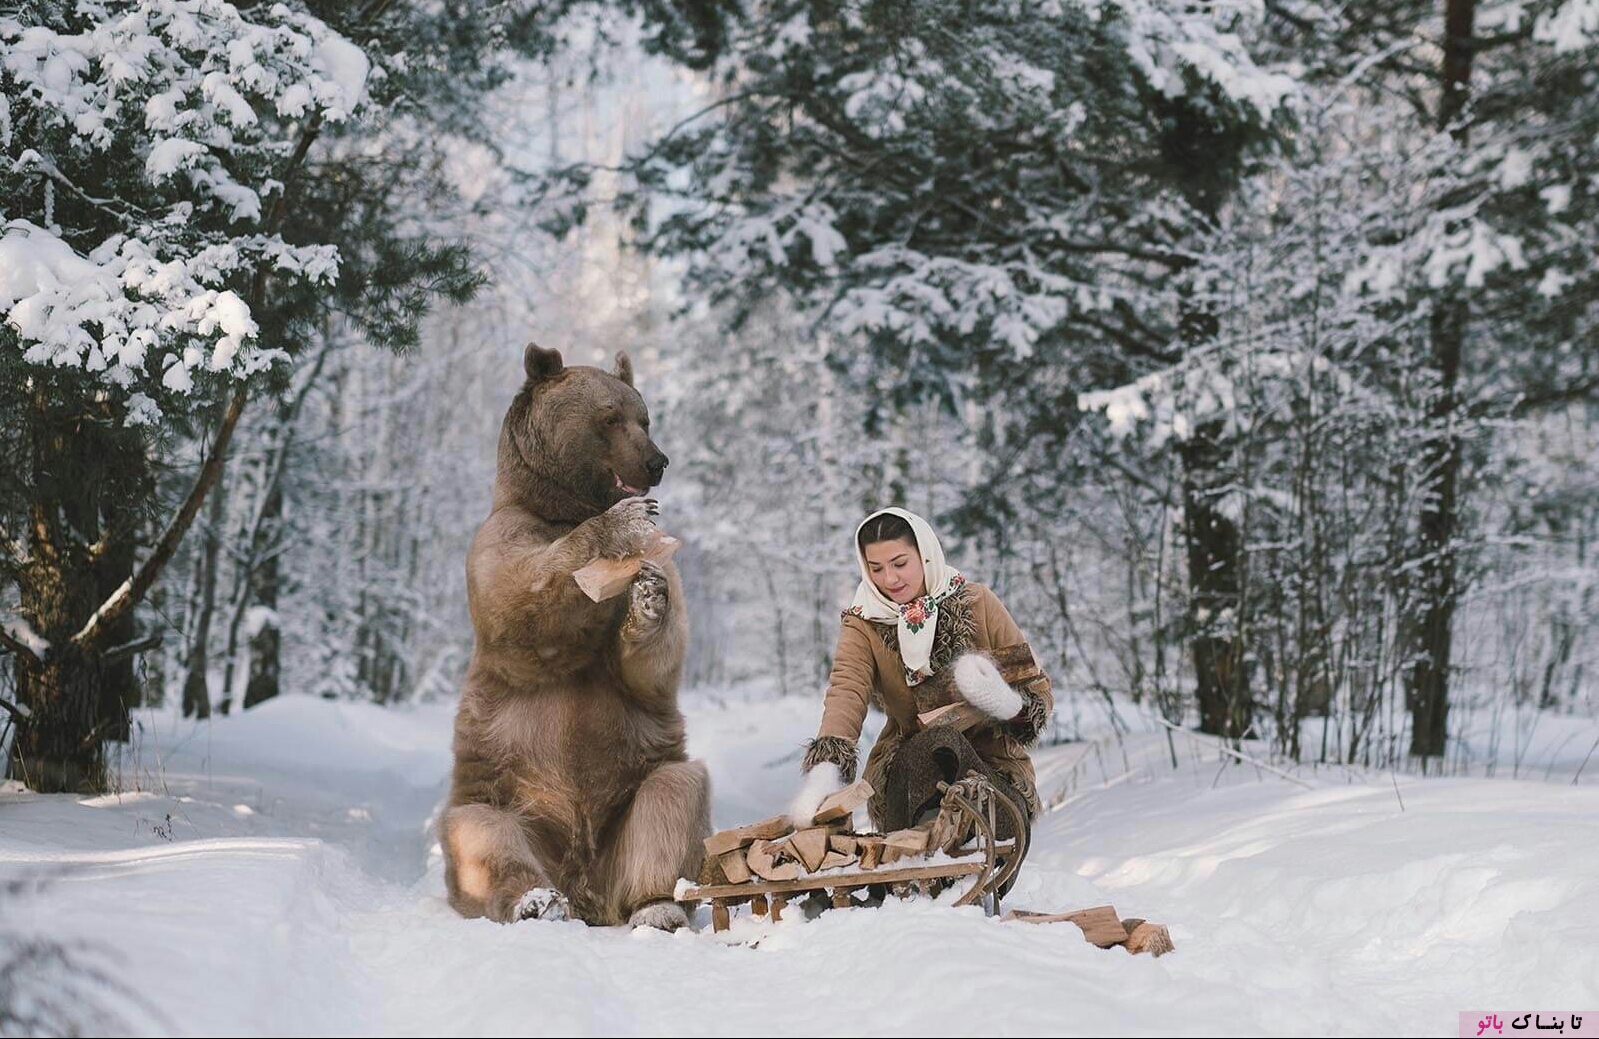 عکس های خیالی در طبیعت سرد روسیه